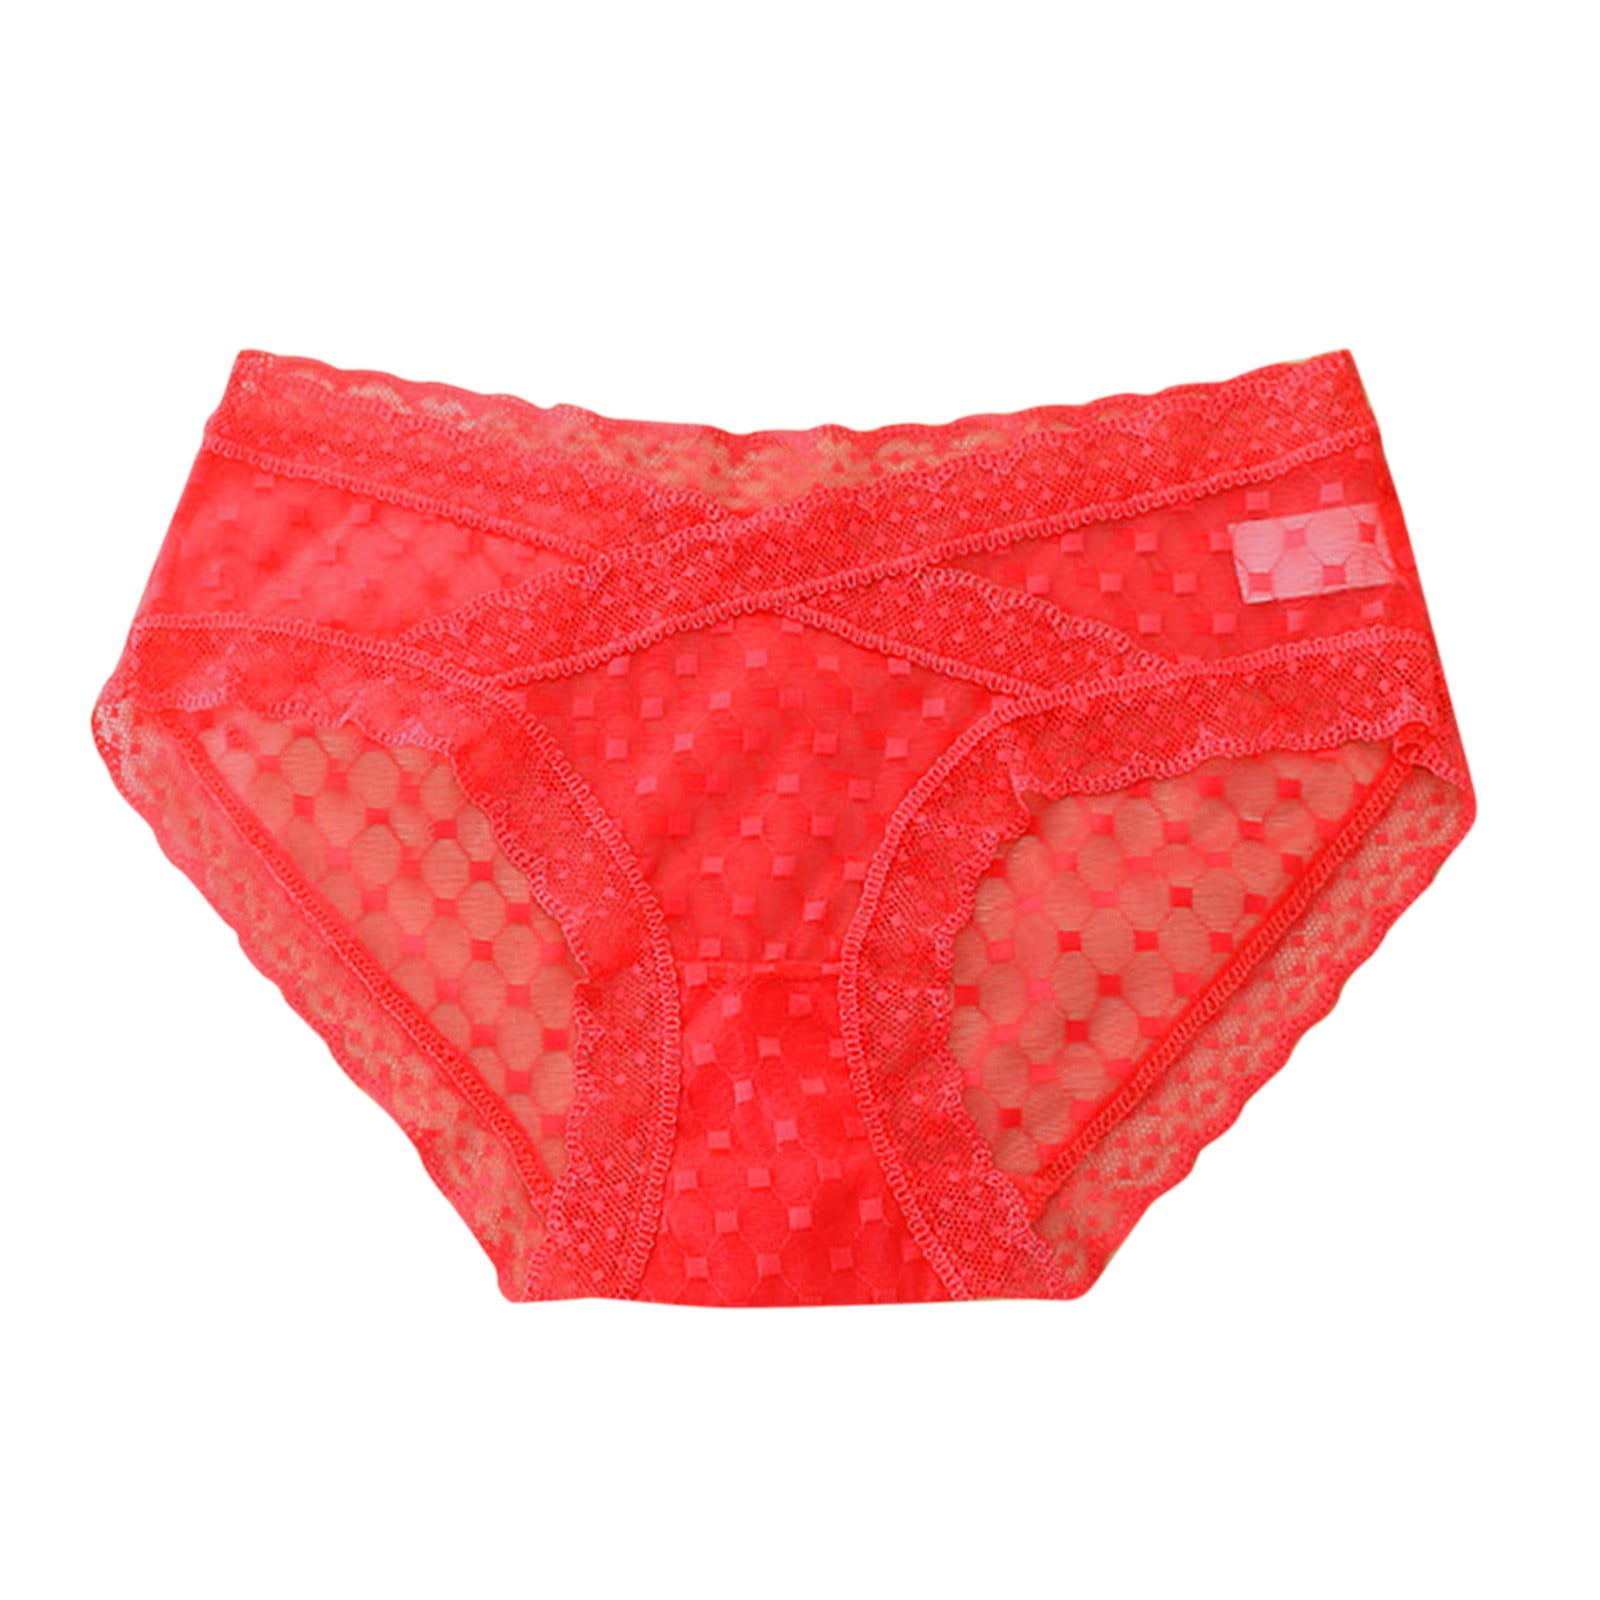 JDEFEG Womens Cute Underwear Variety Pack Seamless Underwear For